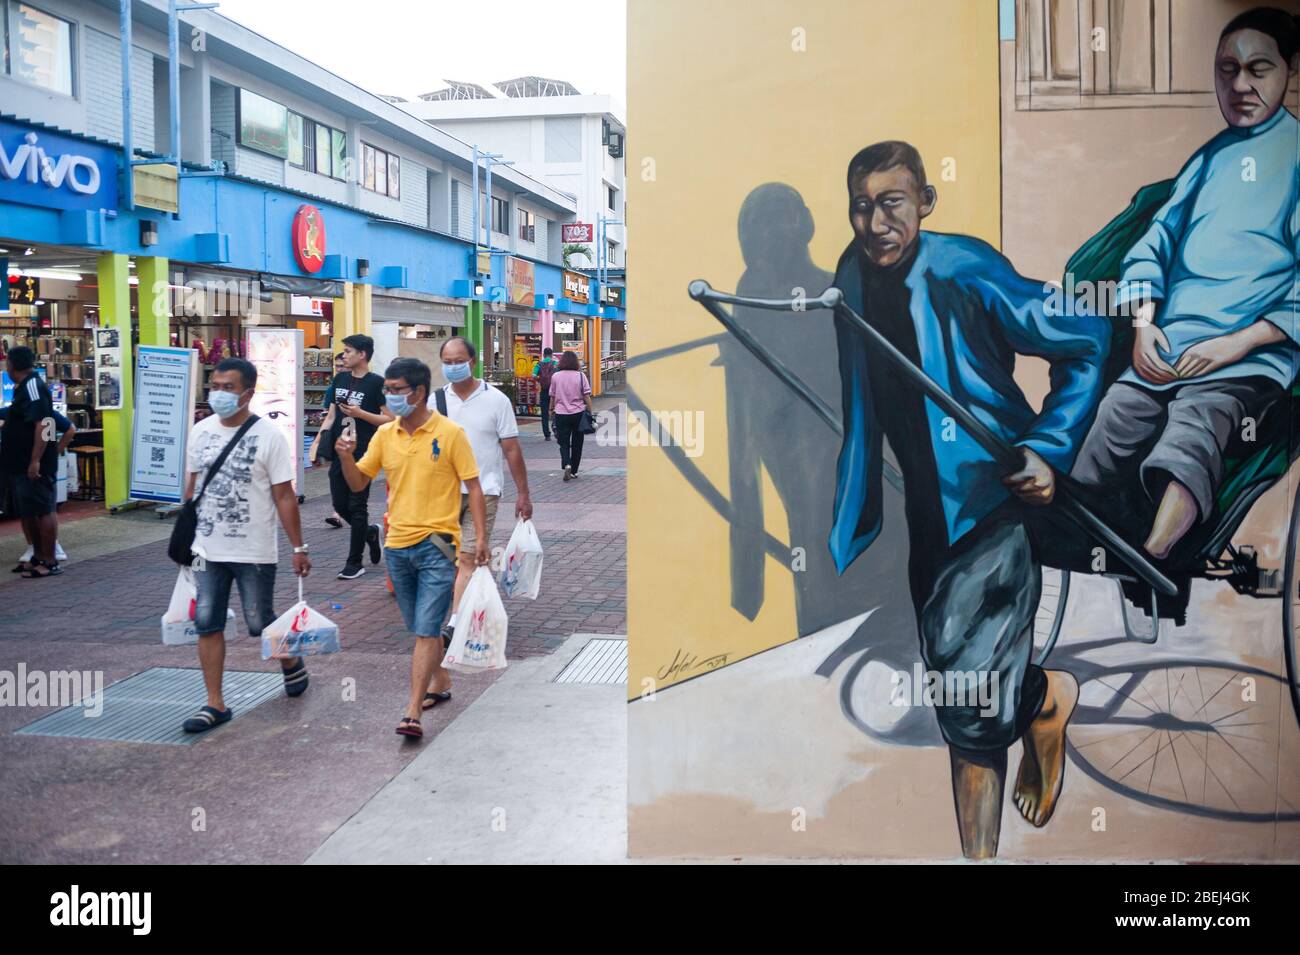 25.03.2020, Singapur, Republik Singapur, Asien - Männer mit Gesichtsmasken gehen an einer Wandmalerei vorbei, die eine traditionelle Rikscha in einer Fußgängerzone darstellt. Stockfoto